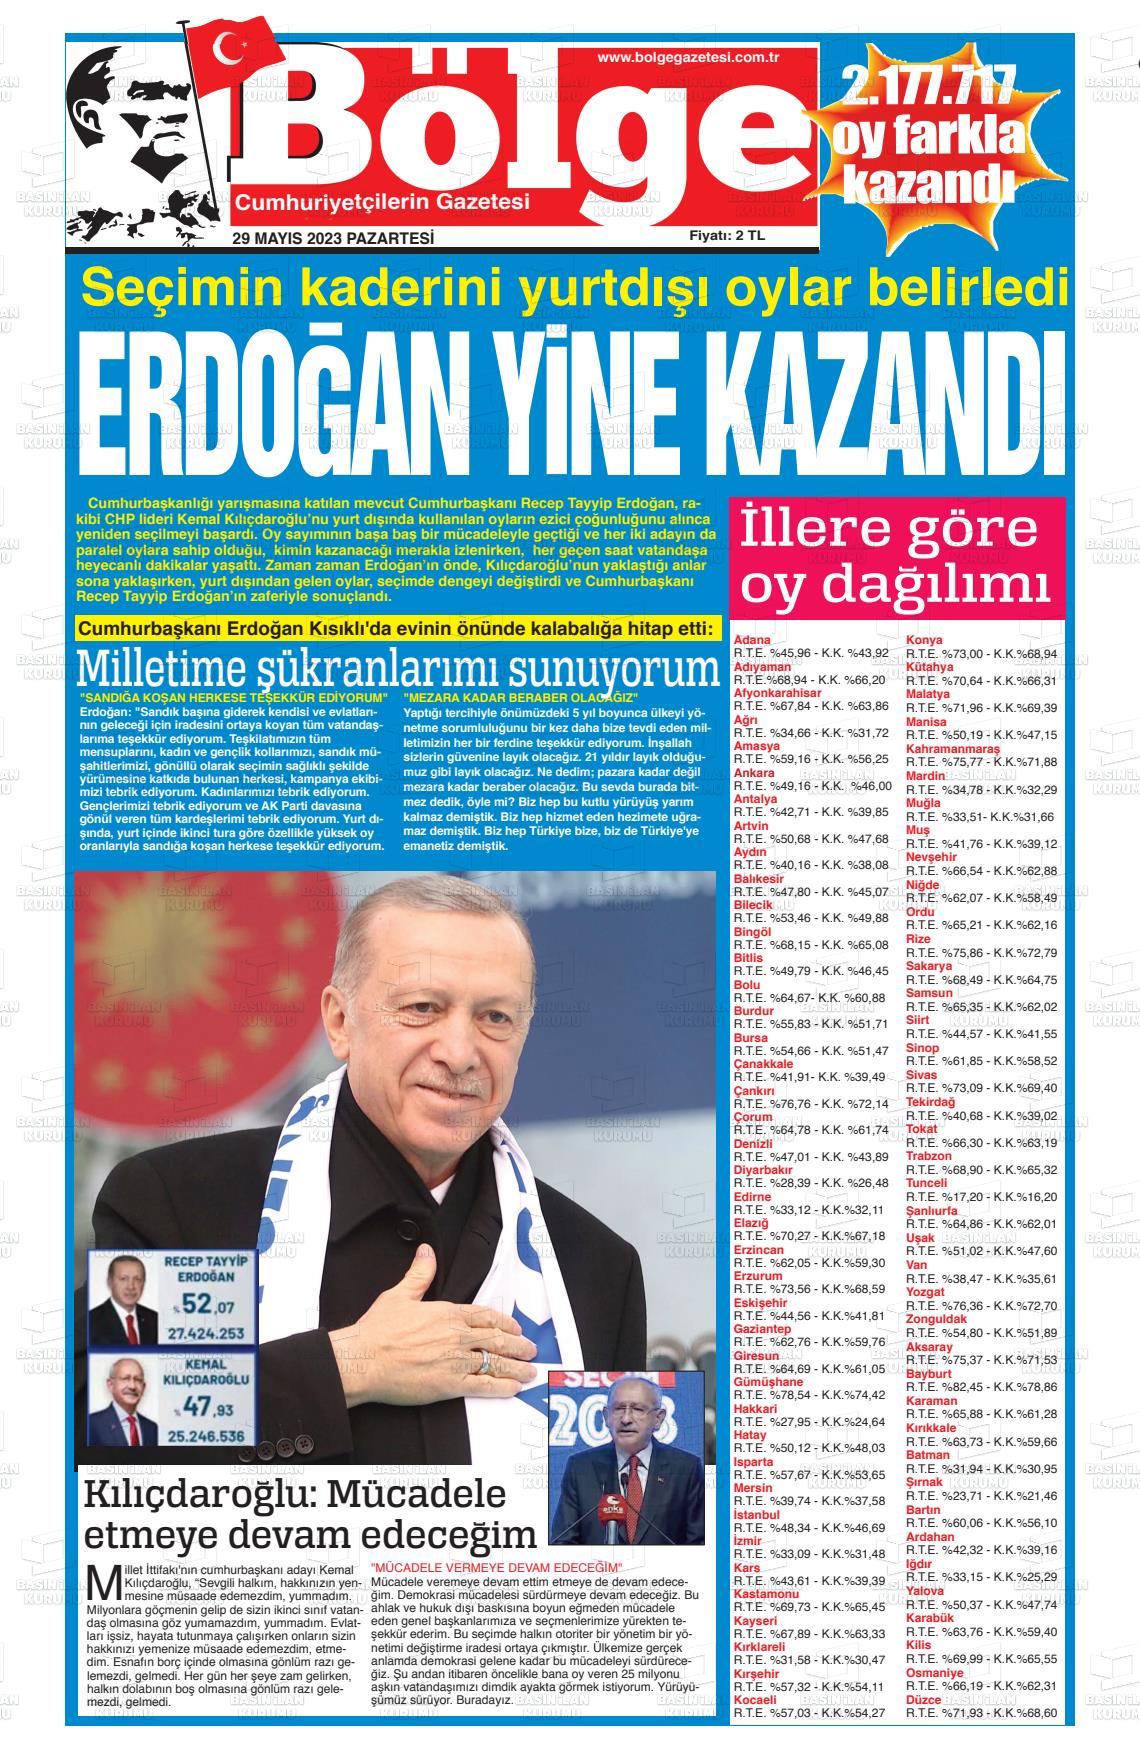 29 Mayıs 2023 Adana Bölge Gazete Manşeti